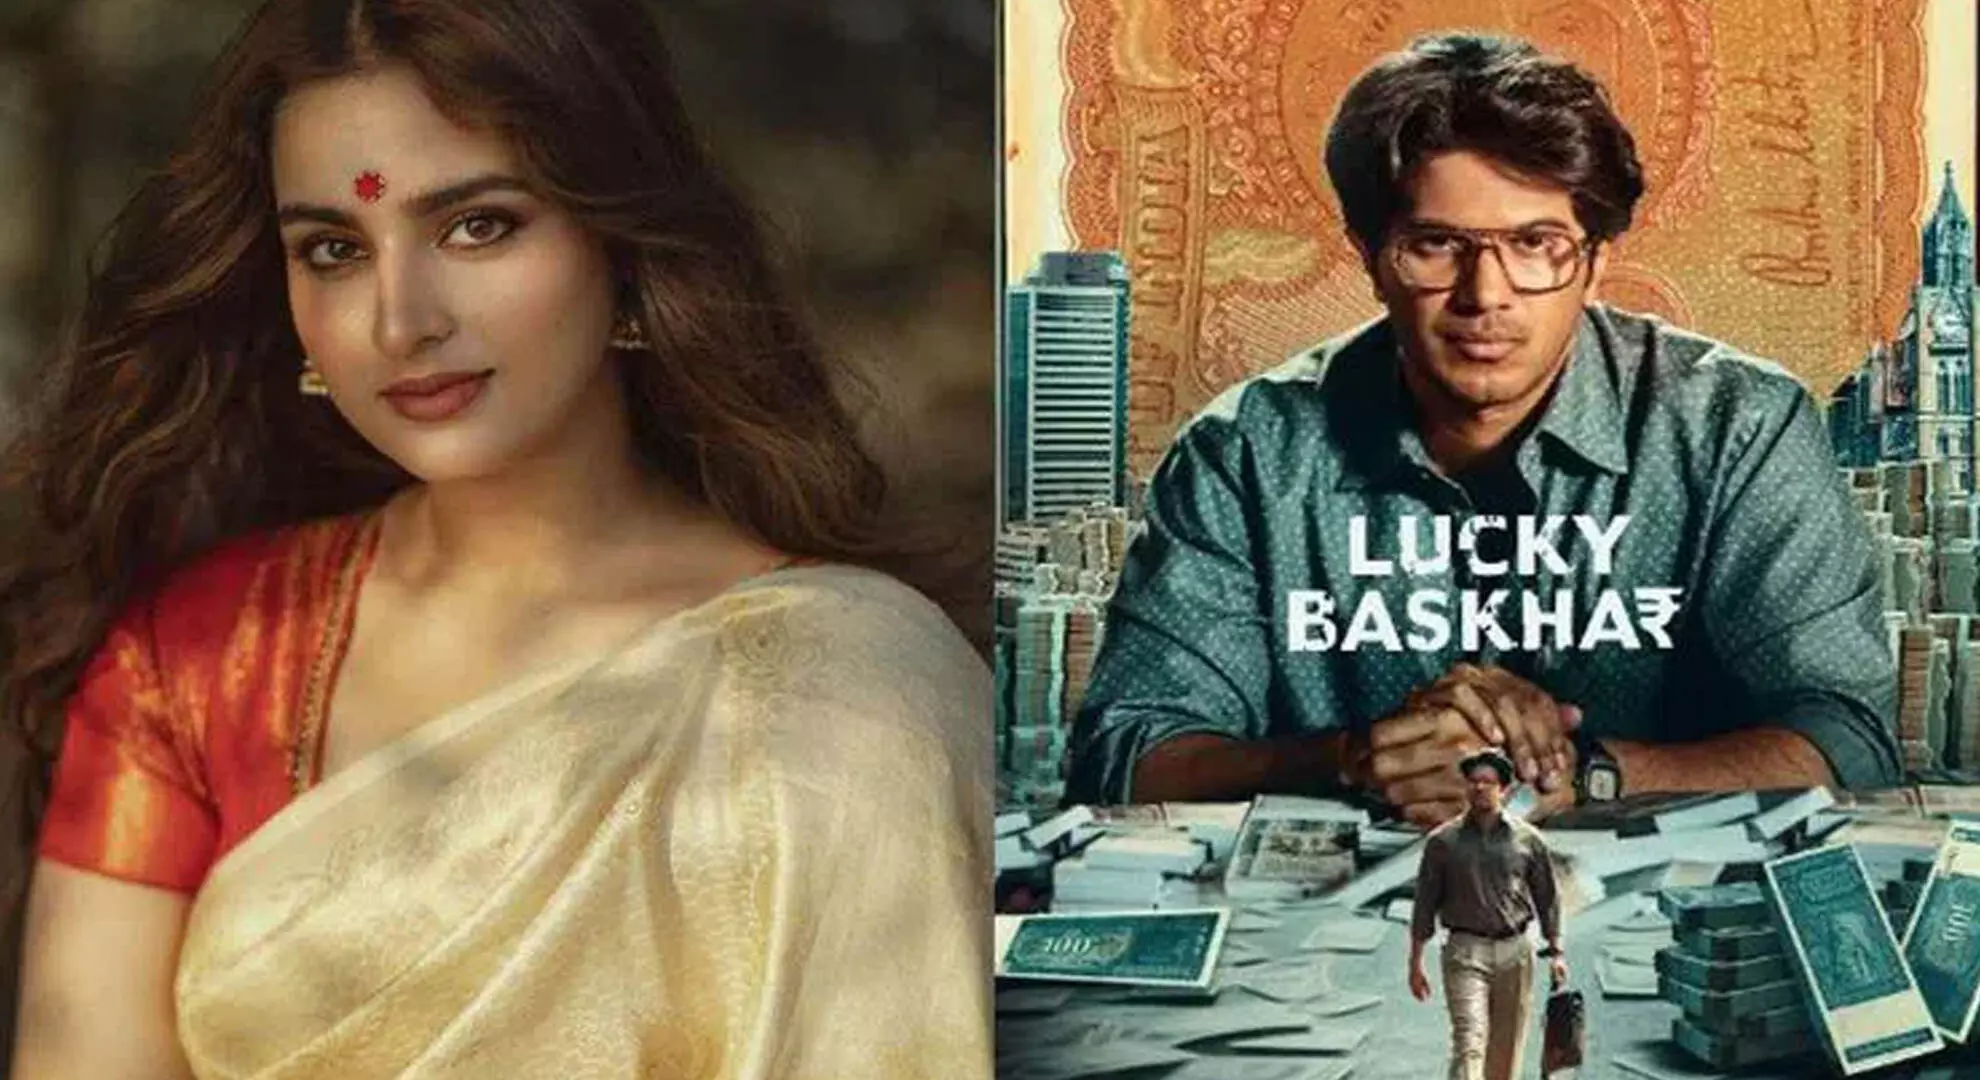 आयशा खान दुलकर सलमान के साथ तेलुगु फिल्म लकी बस्खर में अभिनय करेंगी